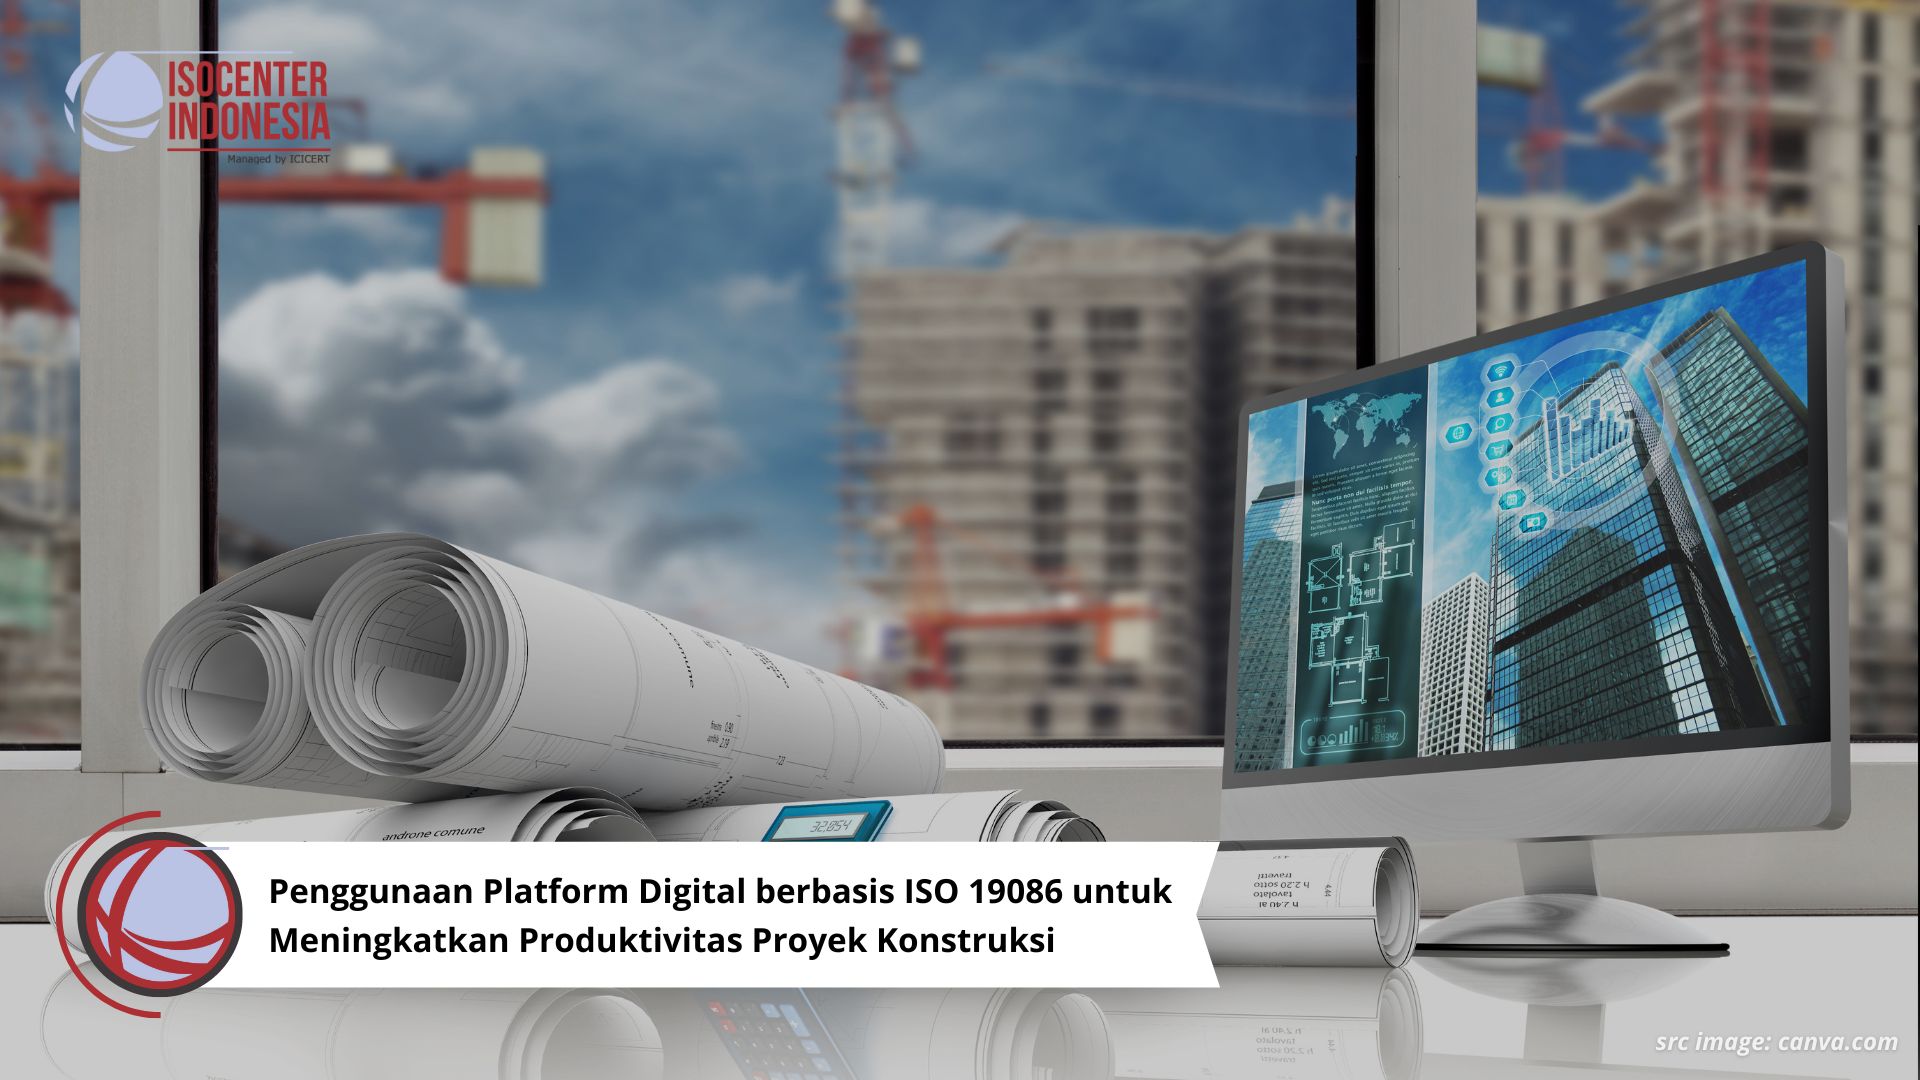 Penggunaan Platform Digital berbasis ISO 19086 untuk Meningkatkan Produktivitas Proyek Konstruksi